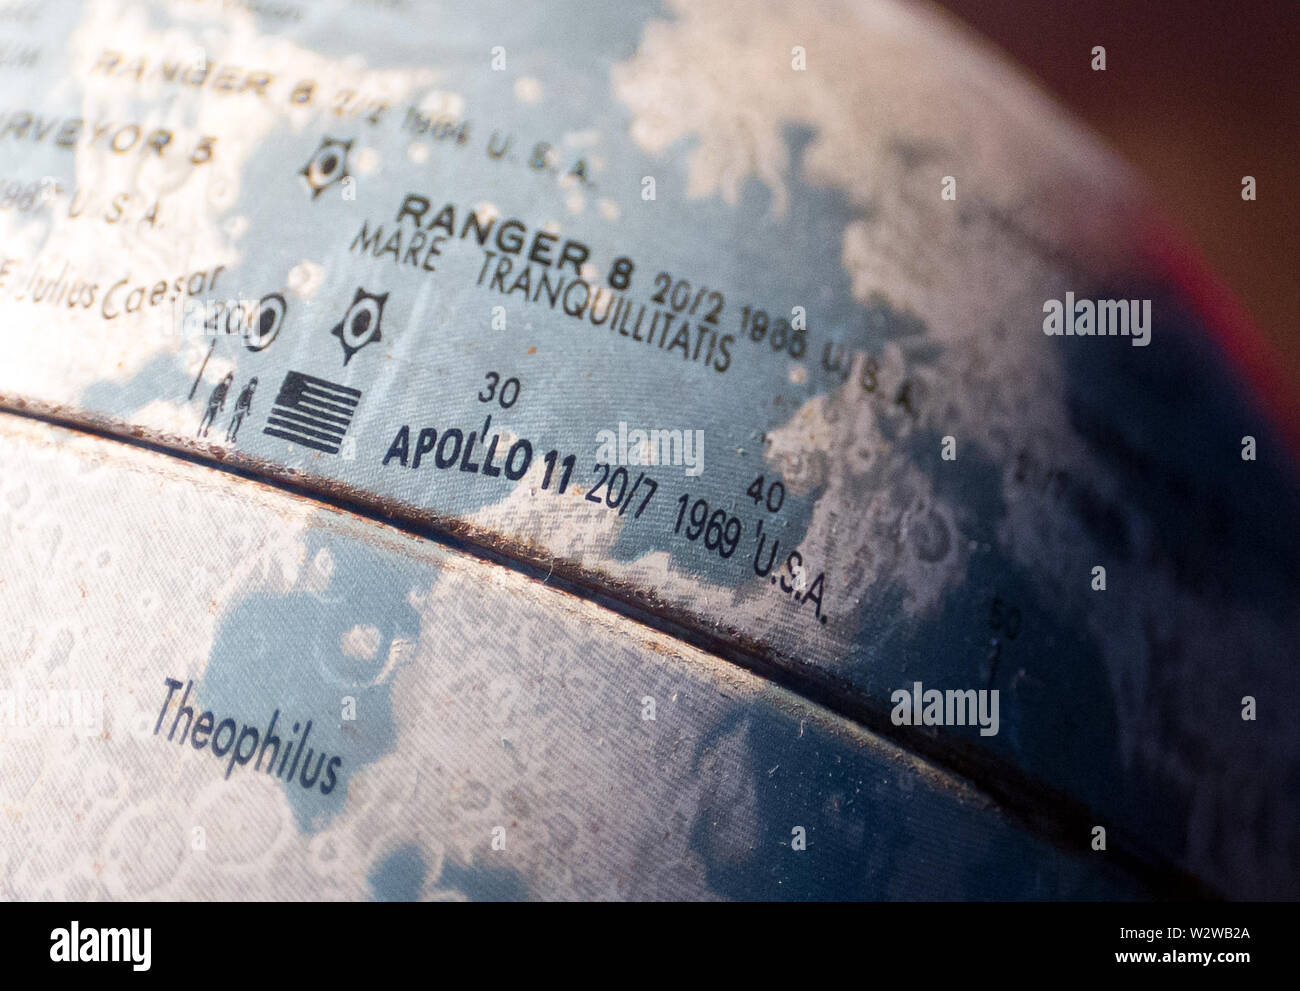 02 Juli 2019, Deutschland (Deutsch), Berlin: ein Metall Mond Globus mit einer Kennzeichnung der Apollo 11 Landestelle steht in einer Wohnung. Juli 20, 2019 markiert den 50. Jahrestag der Mondlandung. (Der KORR Bericht im Wohnzimmer - die Mondlandung und die Space Age" vom 11.07.2019) Foto: Daniel Naupold/dpa Stockfoto